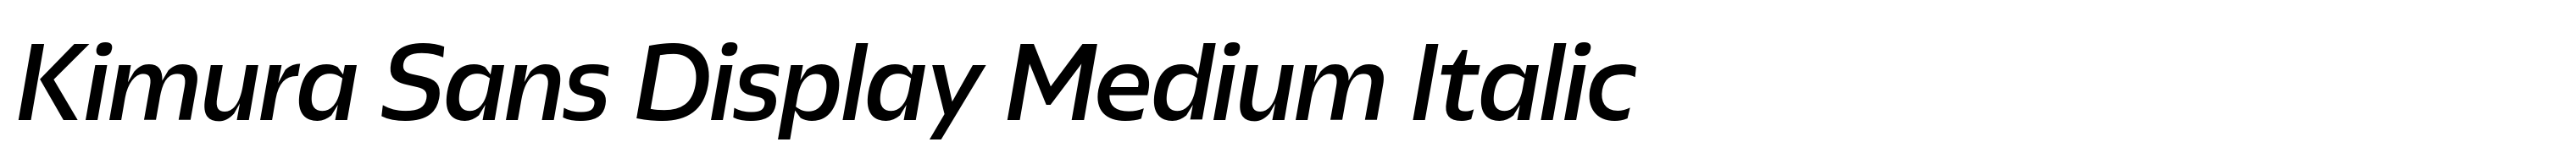 Kimura Sans Display Medium Italic